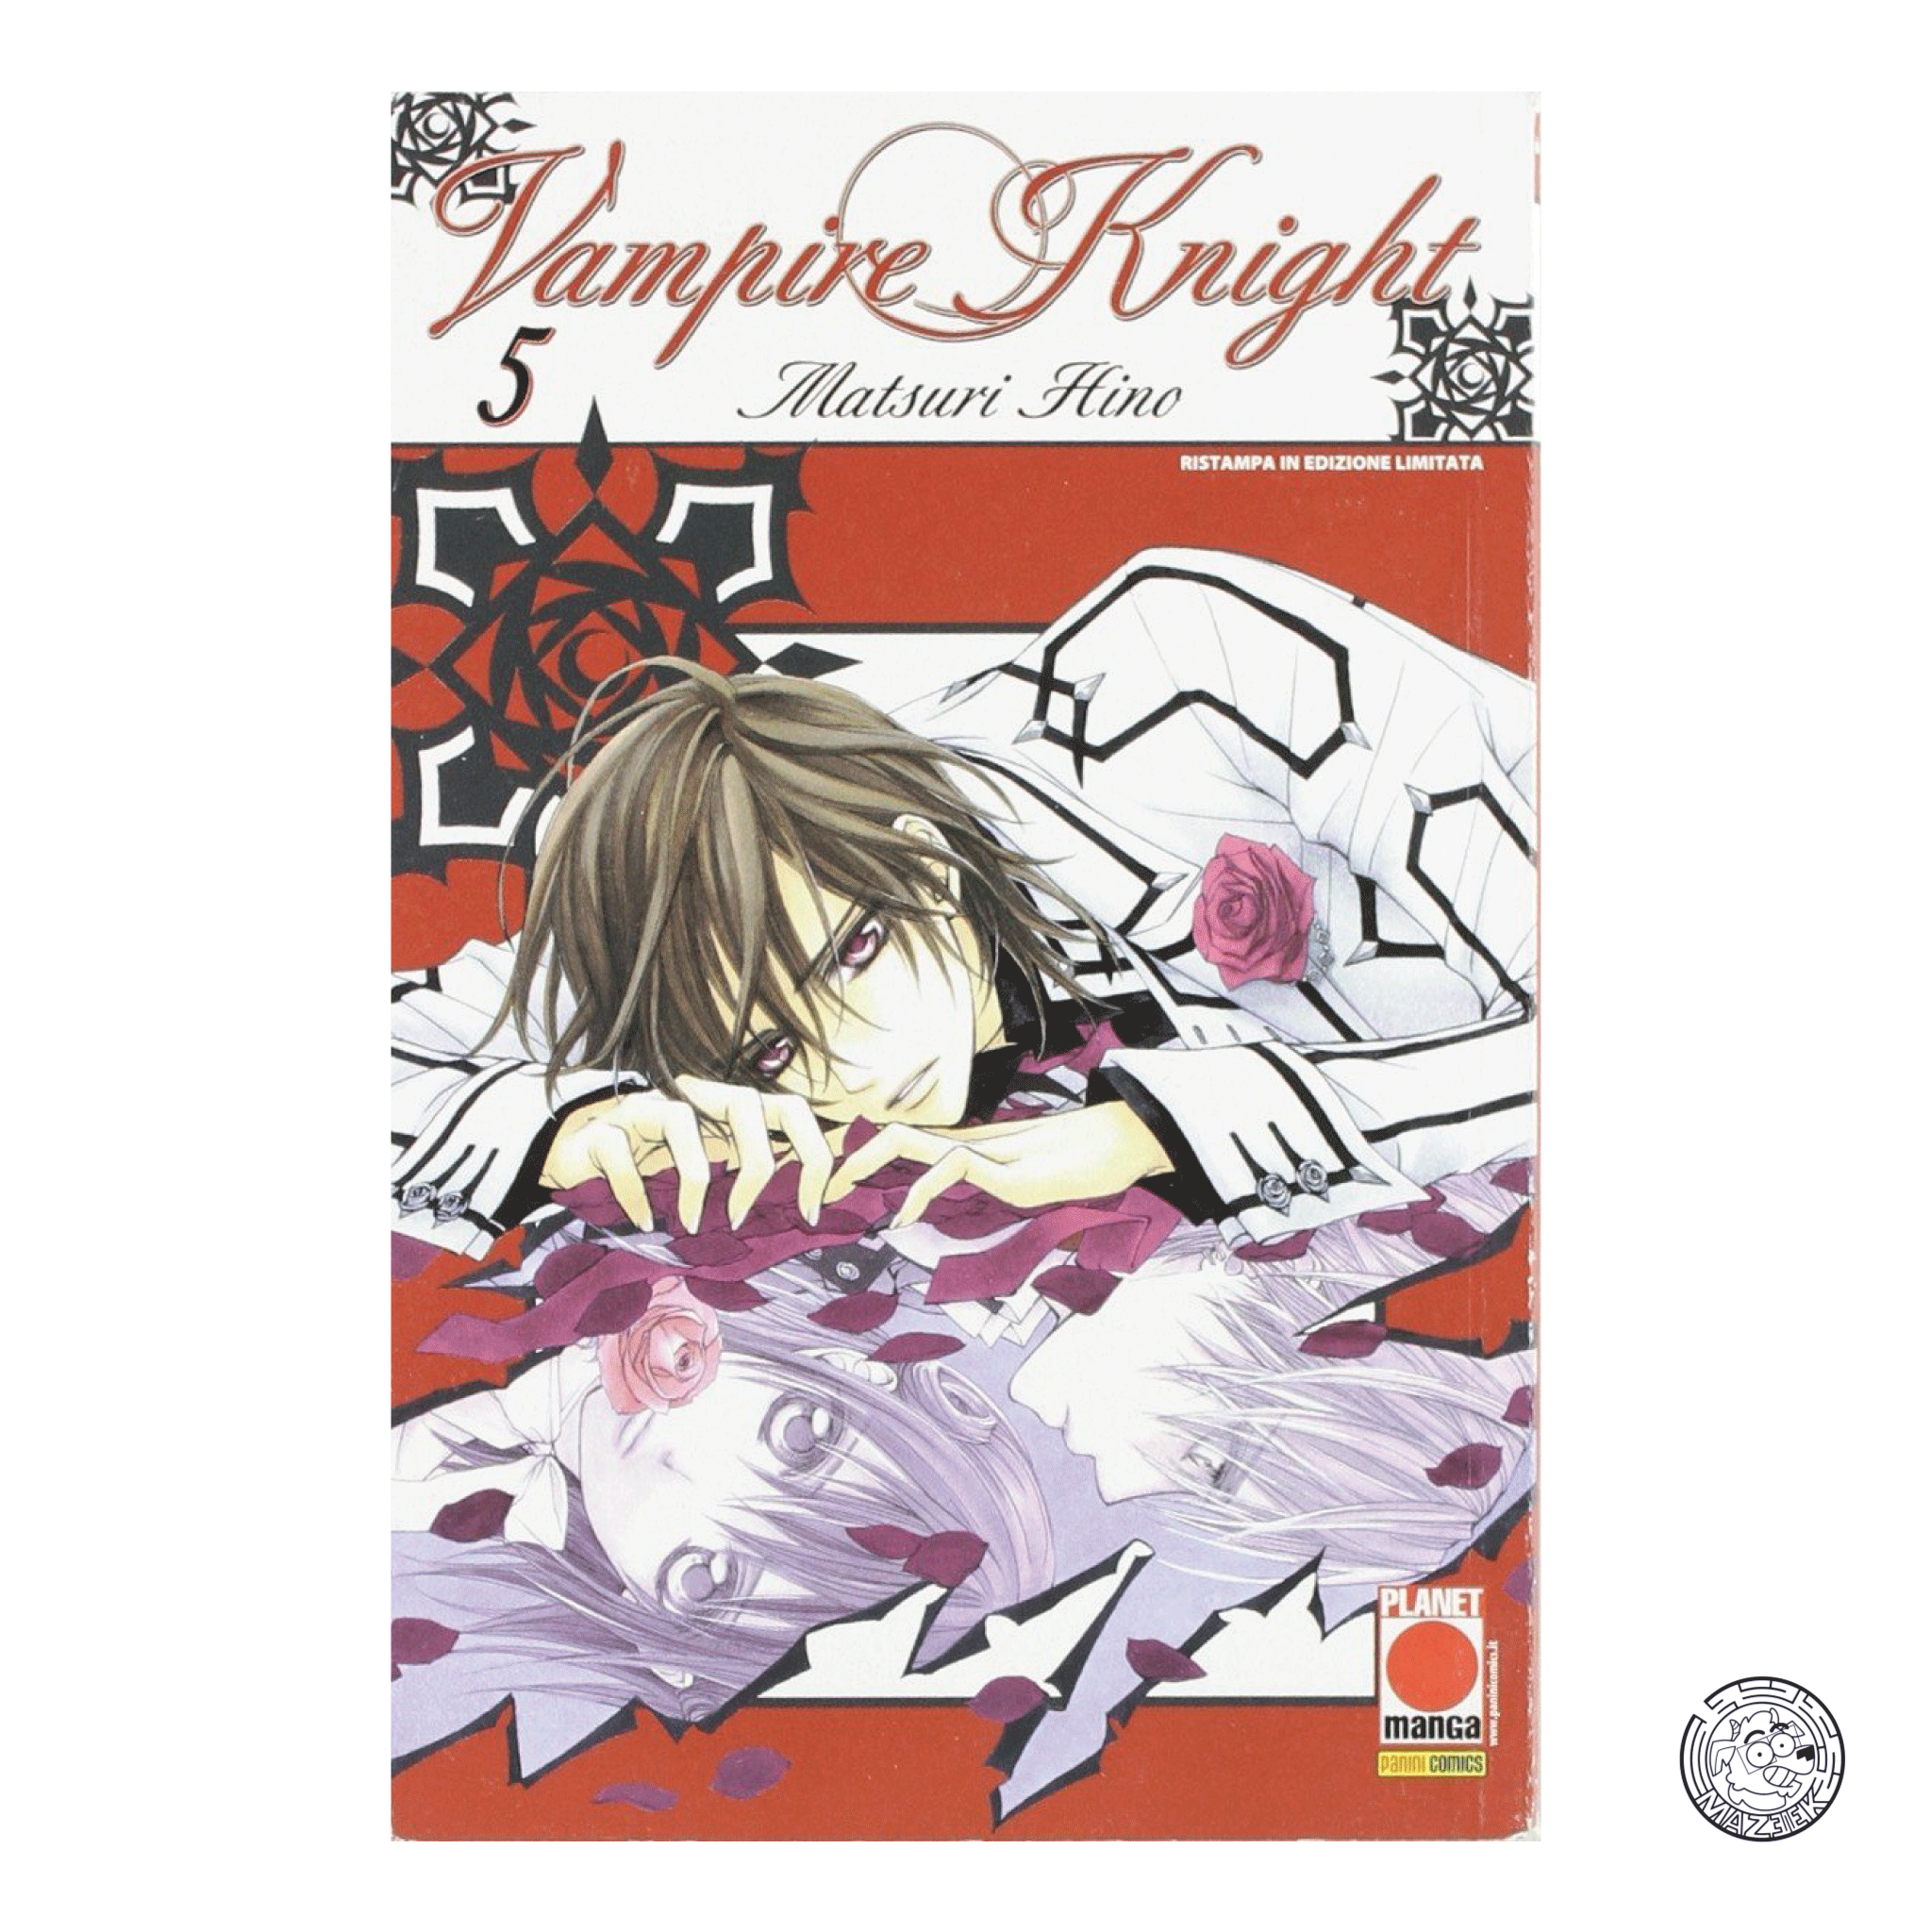 Vampire Knight 05 - Reprint 1